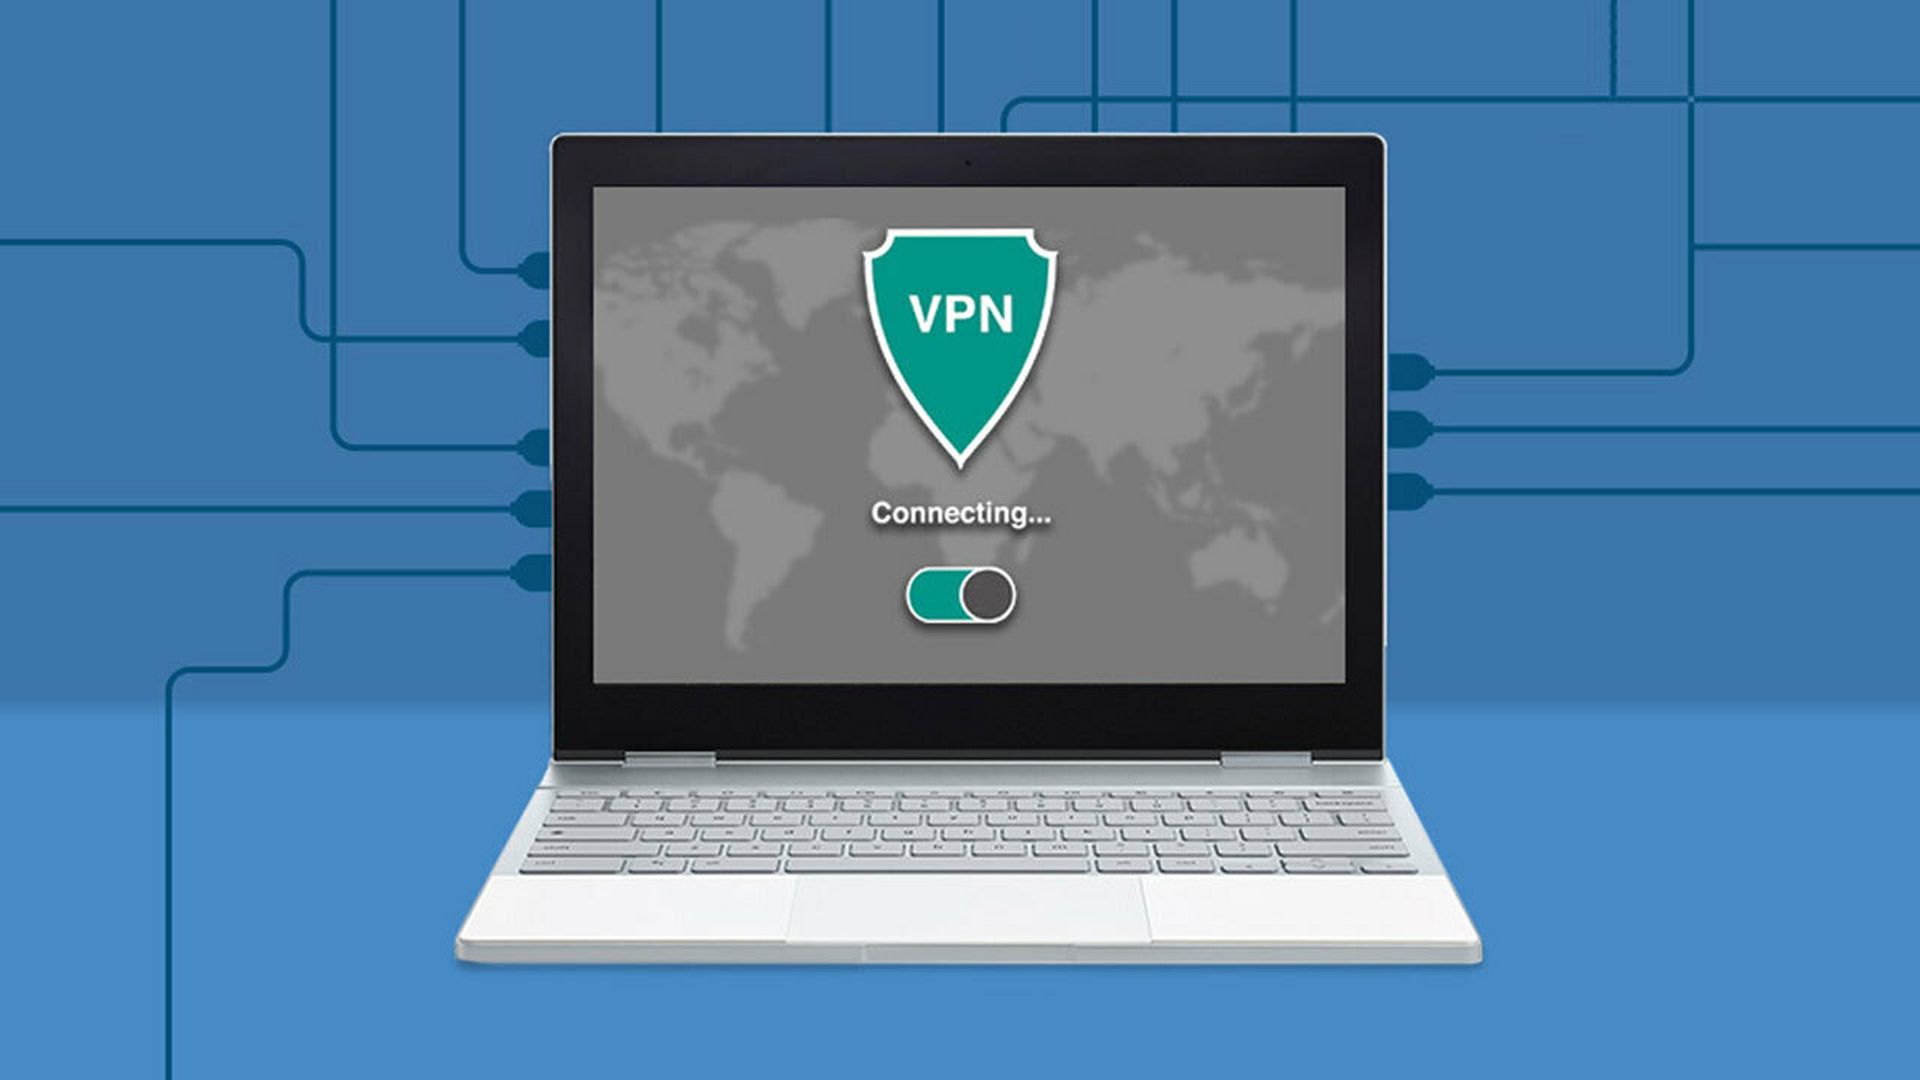 Configure uma VPN no Chromebook facilmente